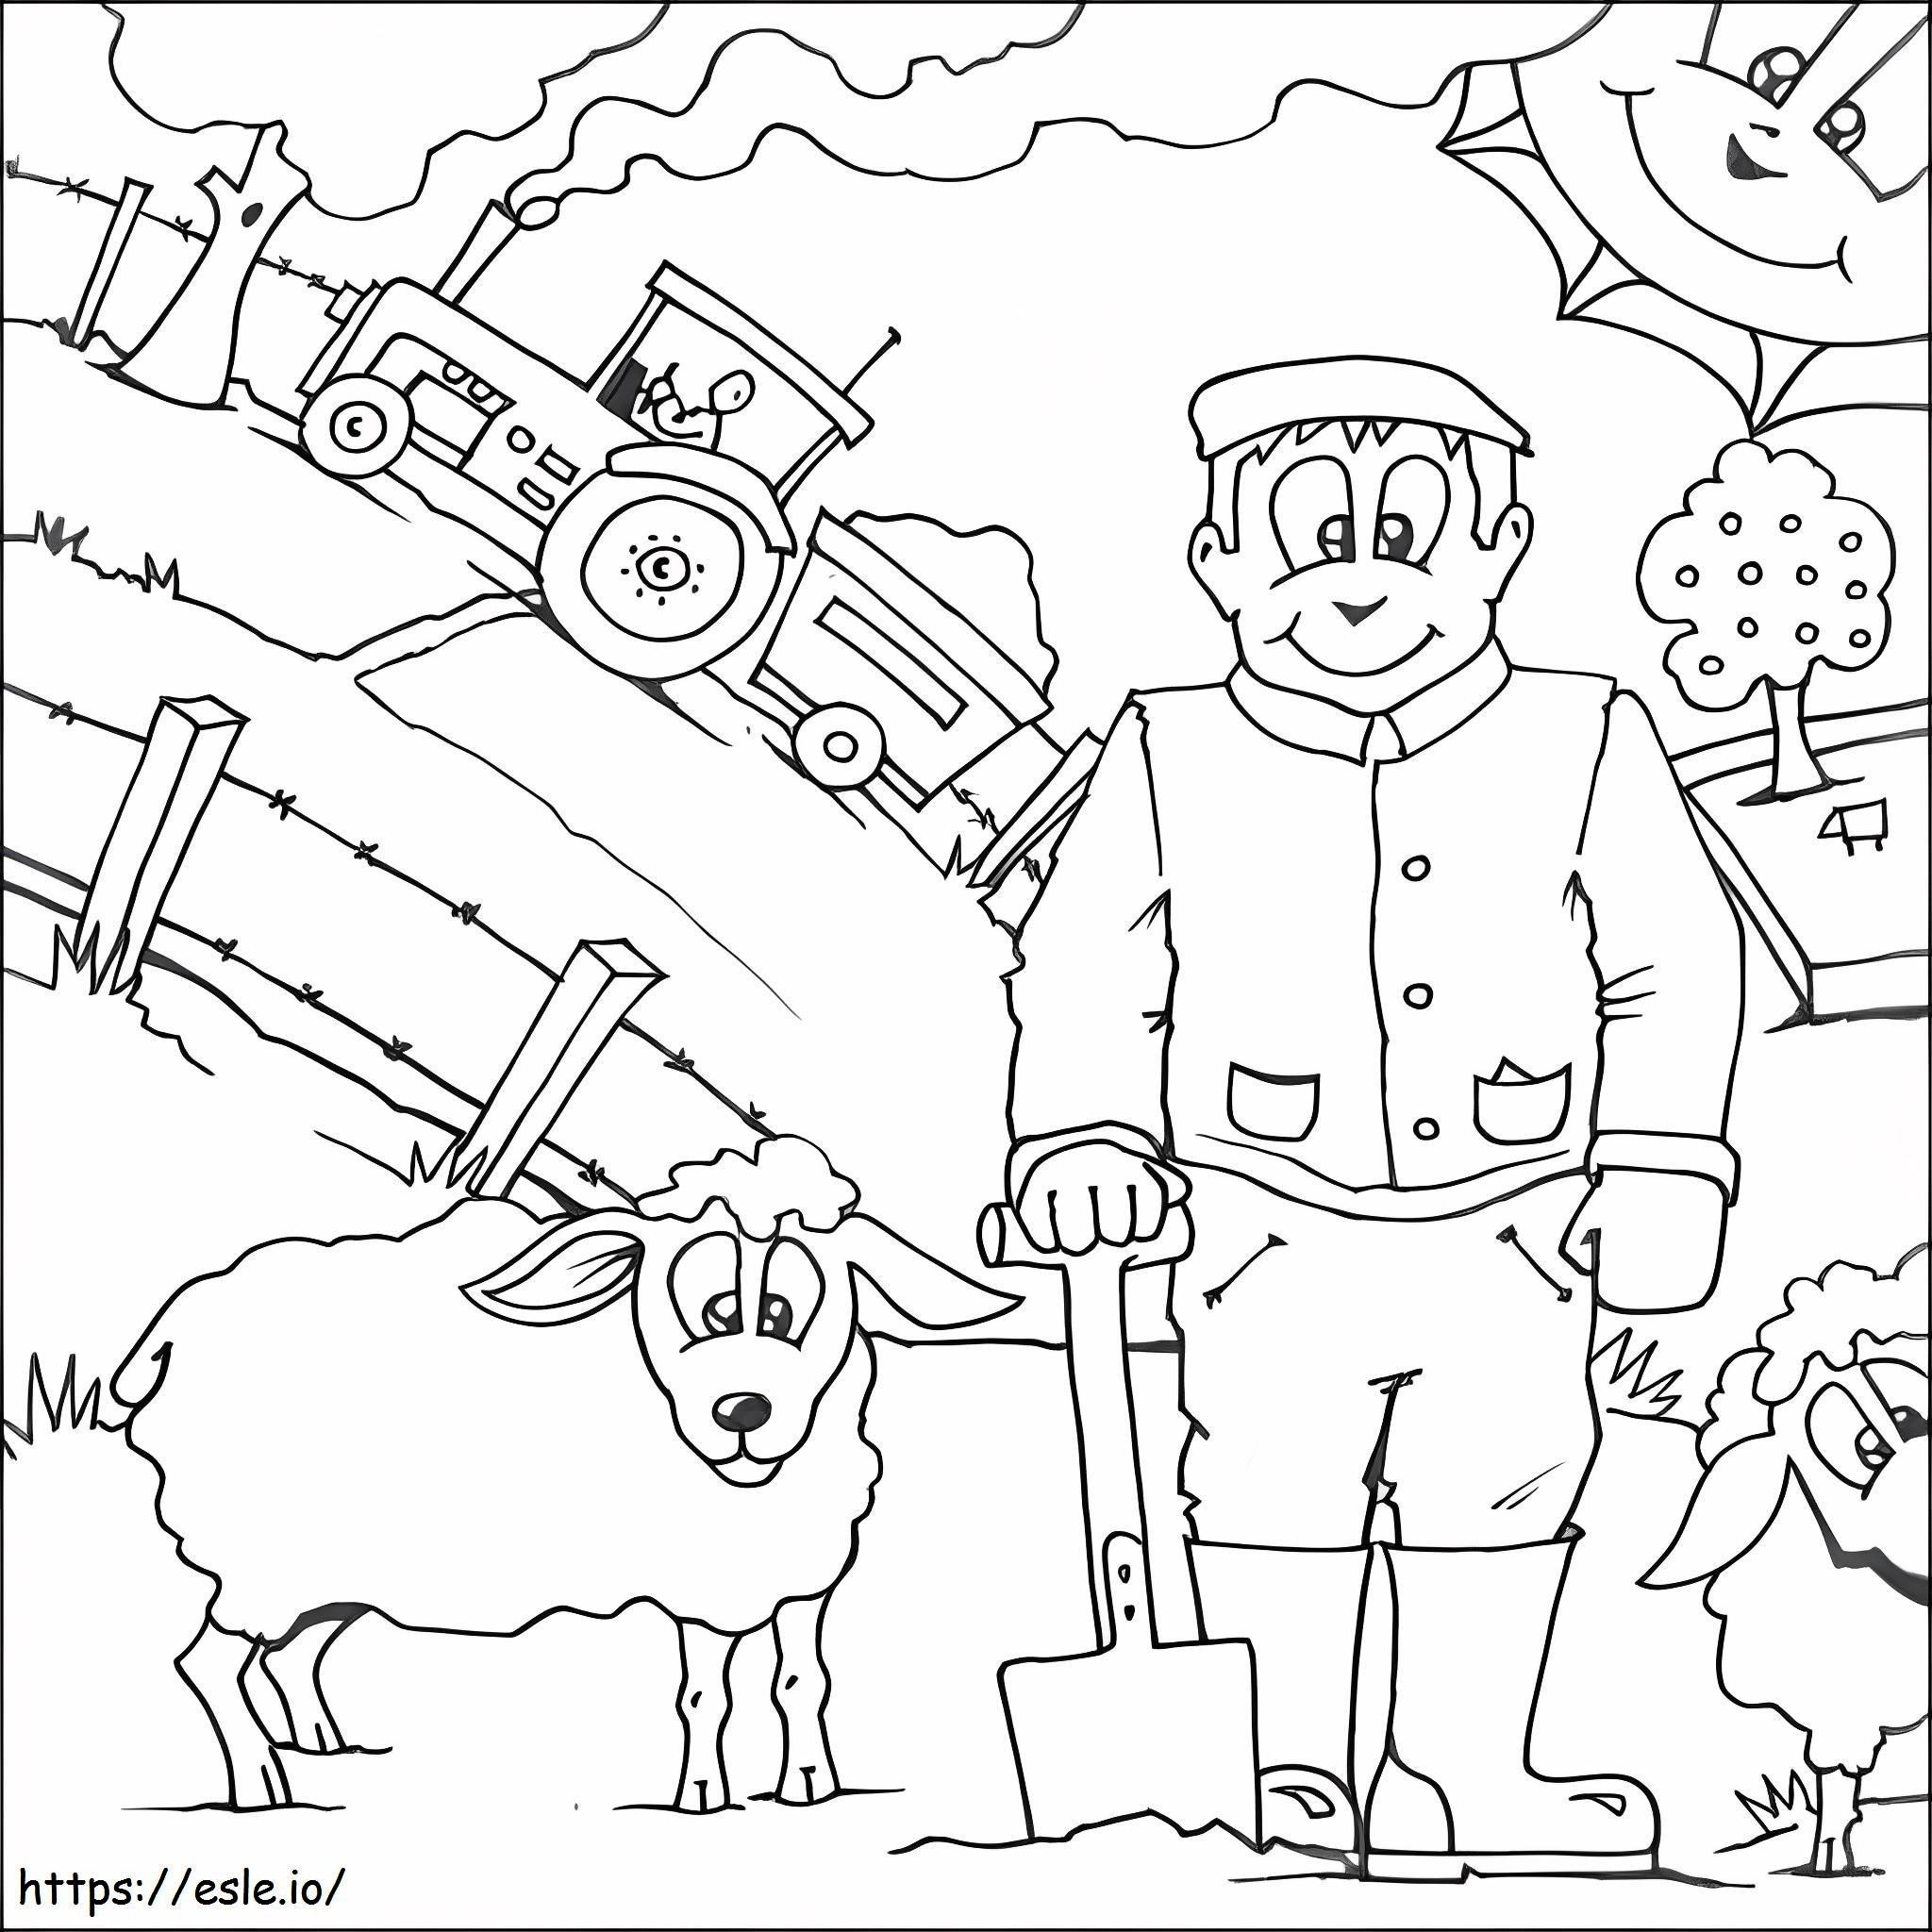 Çiftçi ve Koyun boyama